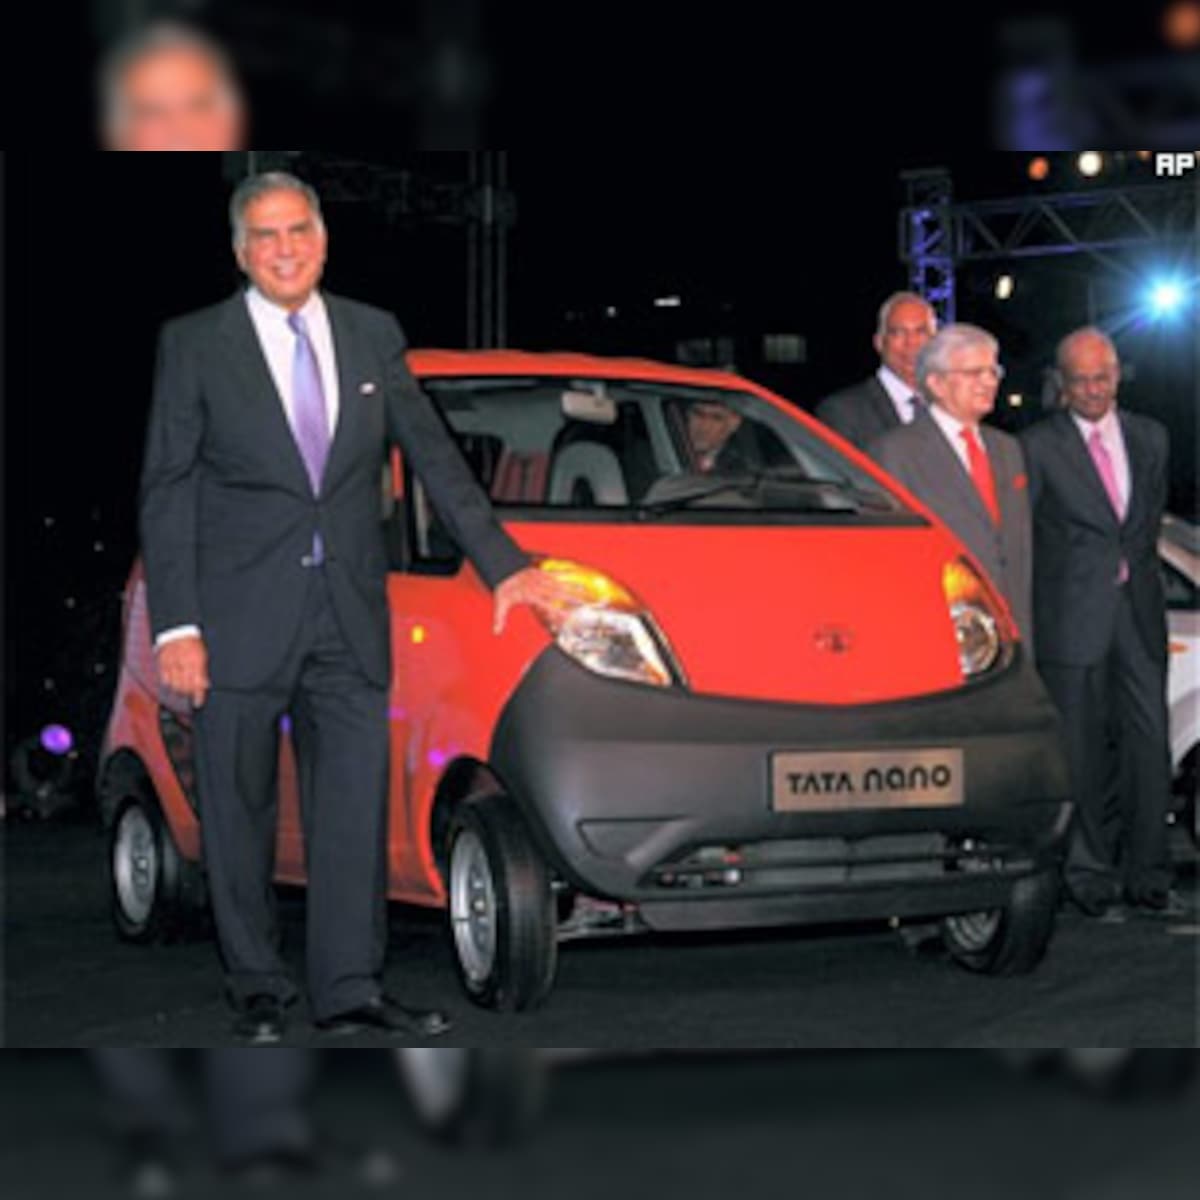 Ratan Tata launches Nano in